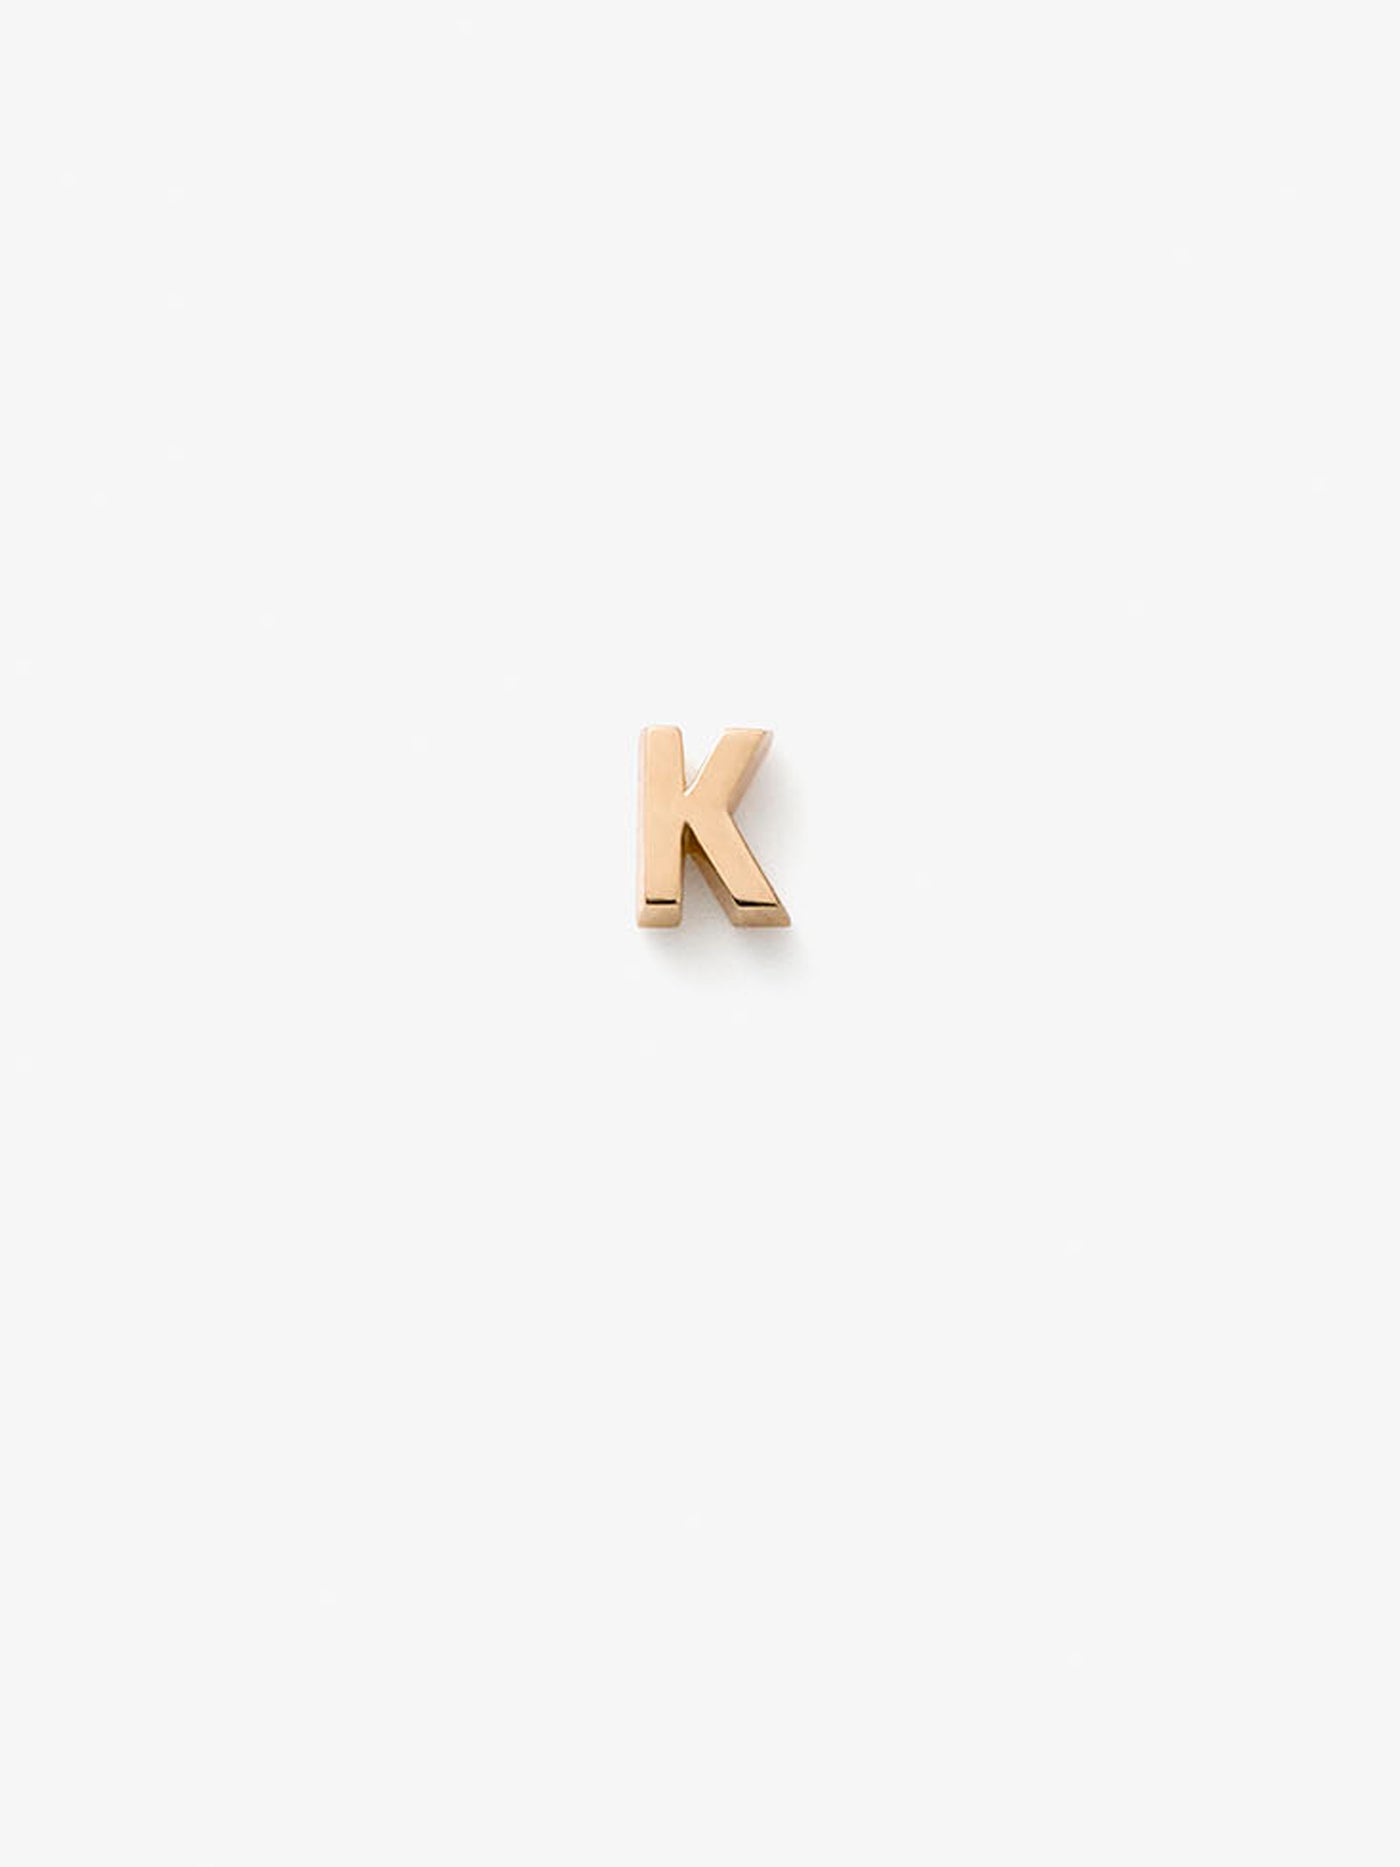 Letter K in 18k Gold